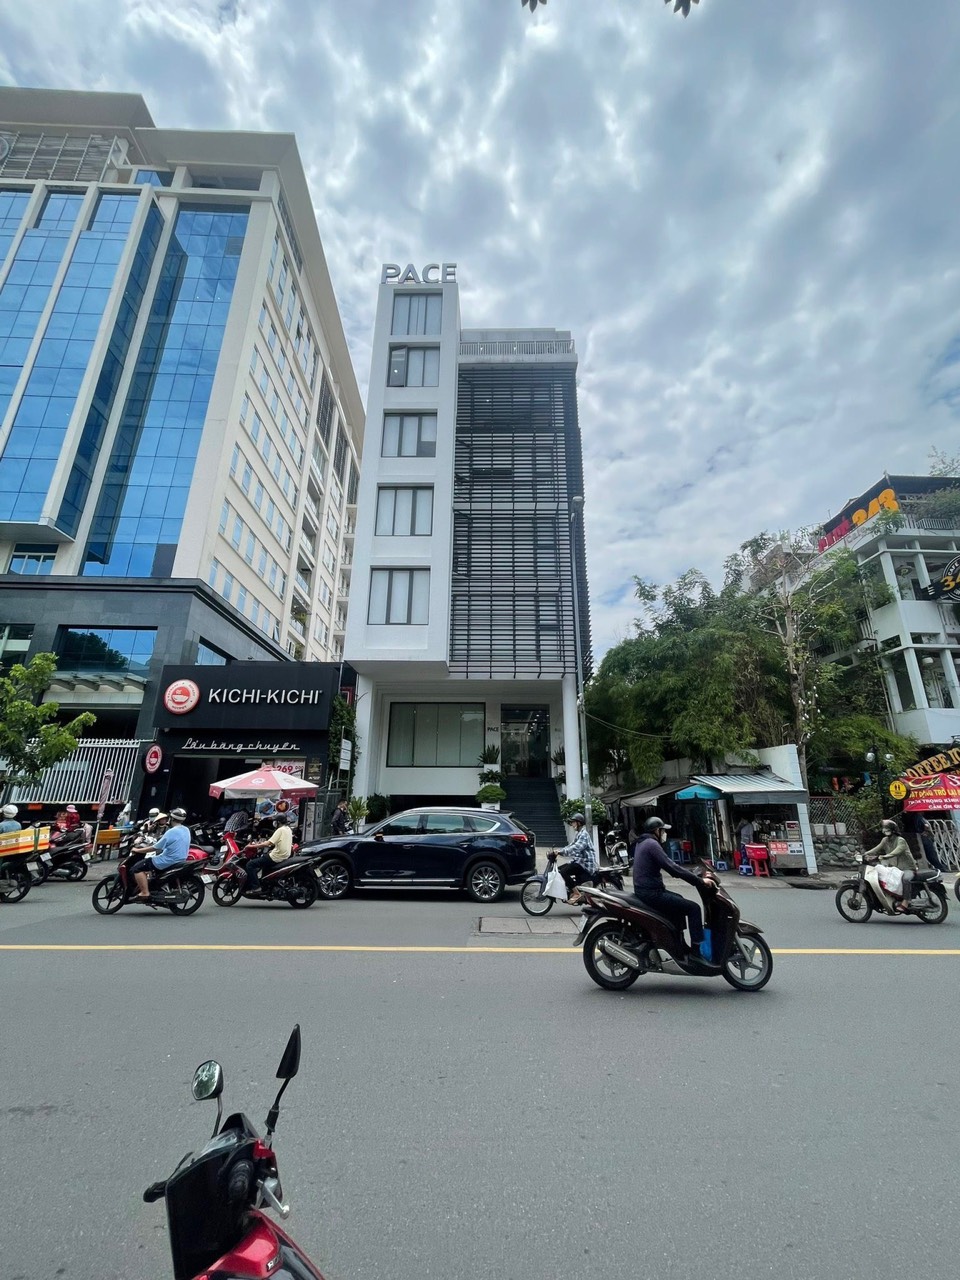 Chính chủ bán gấp tòa nhà mặt tiền VIP 406 Nguyễn Thị Minh Khai, (6,5 x 22m), giá 76 tỷ